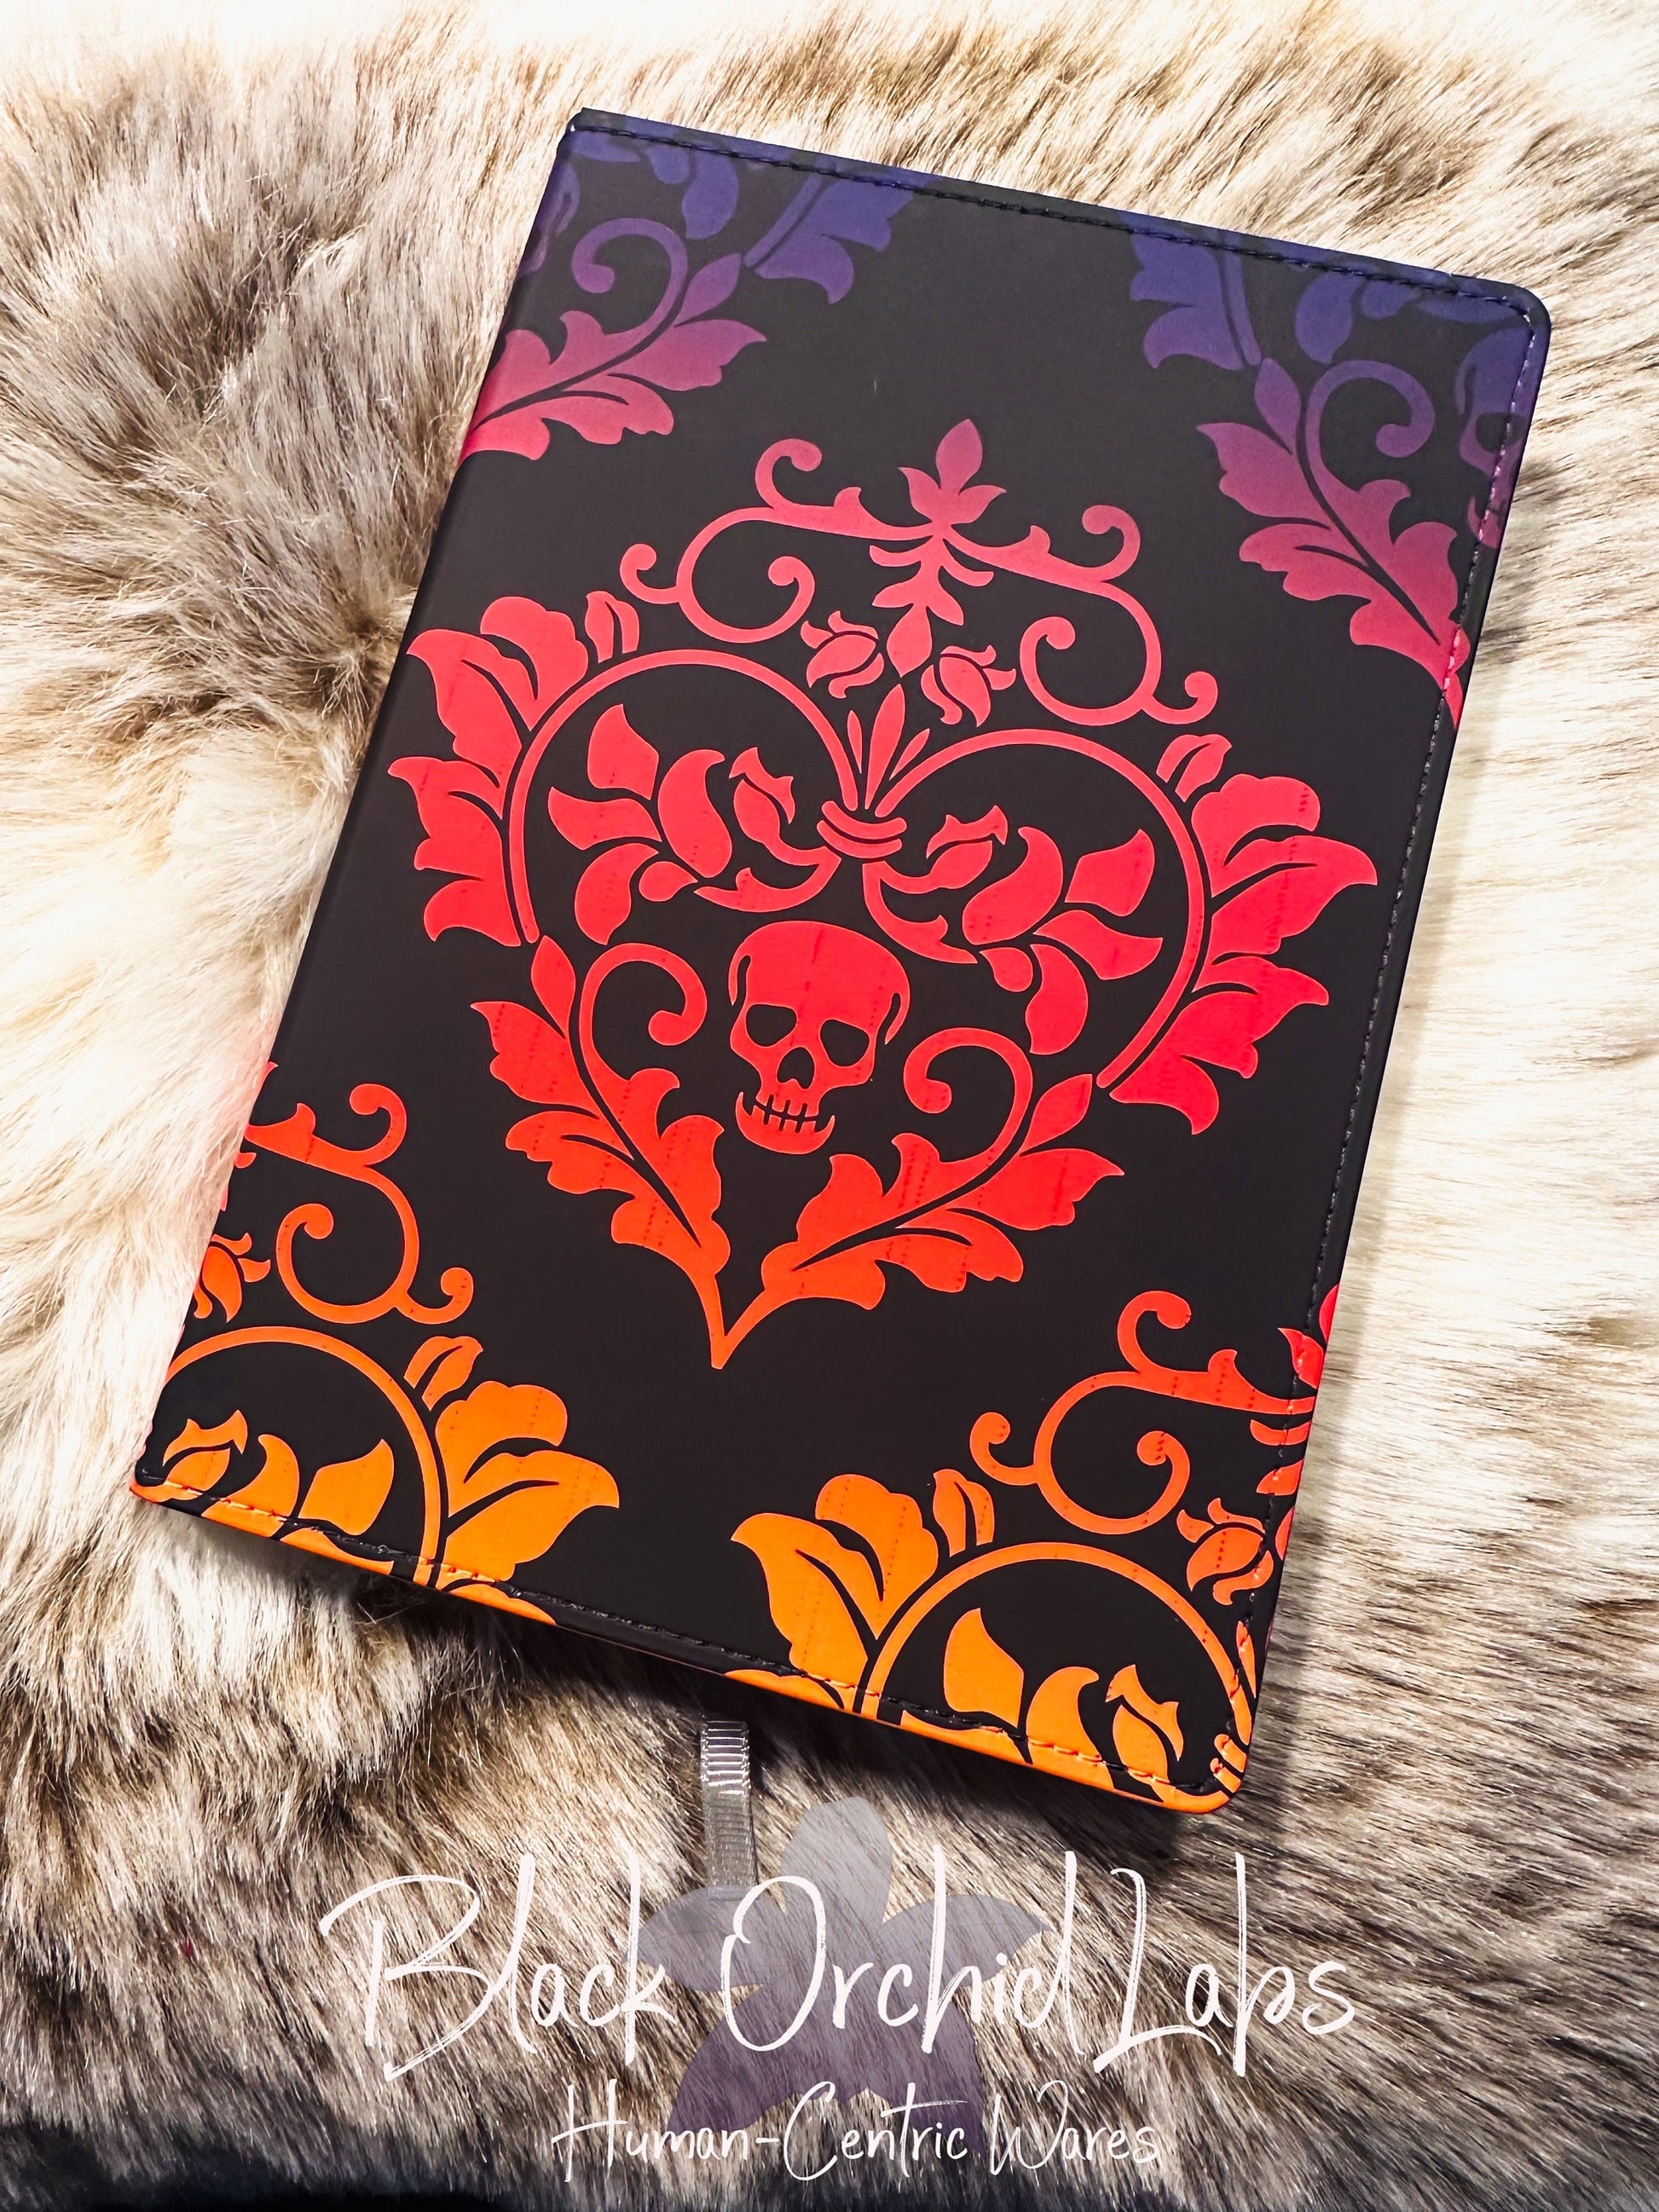 Skull gothic Vegan Leather Journal, 8”x6”, journal, writer reader gift, coworker gift, gift exchange, journal, steampunk Poe, dark fantasy